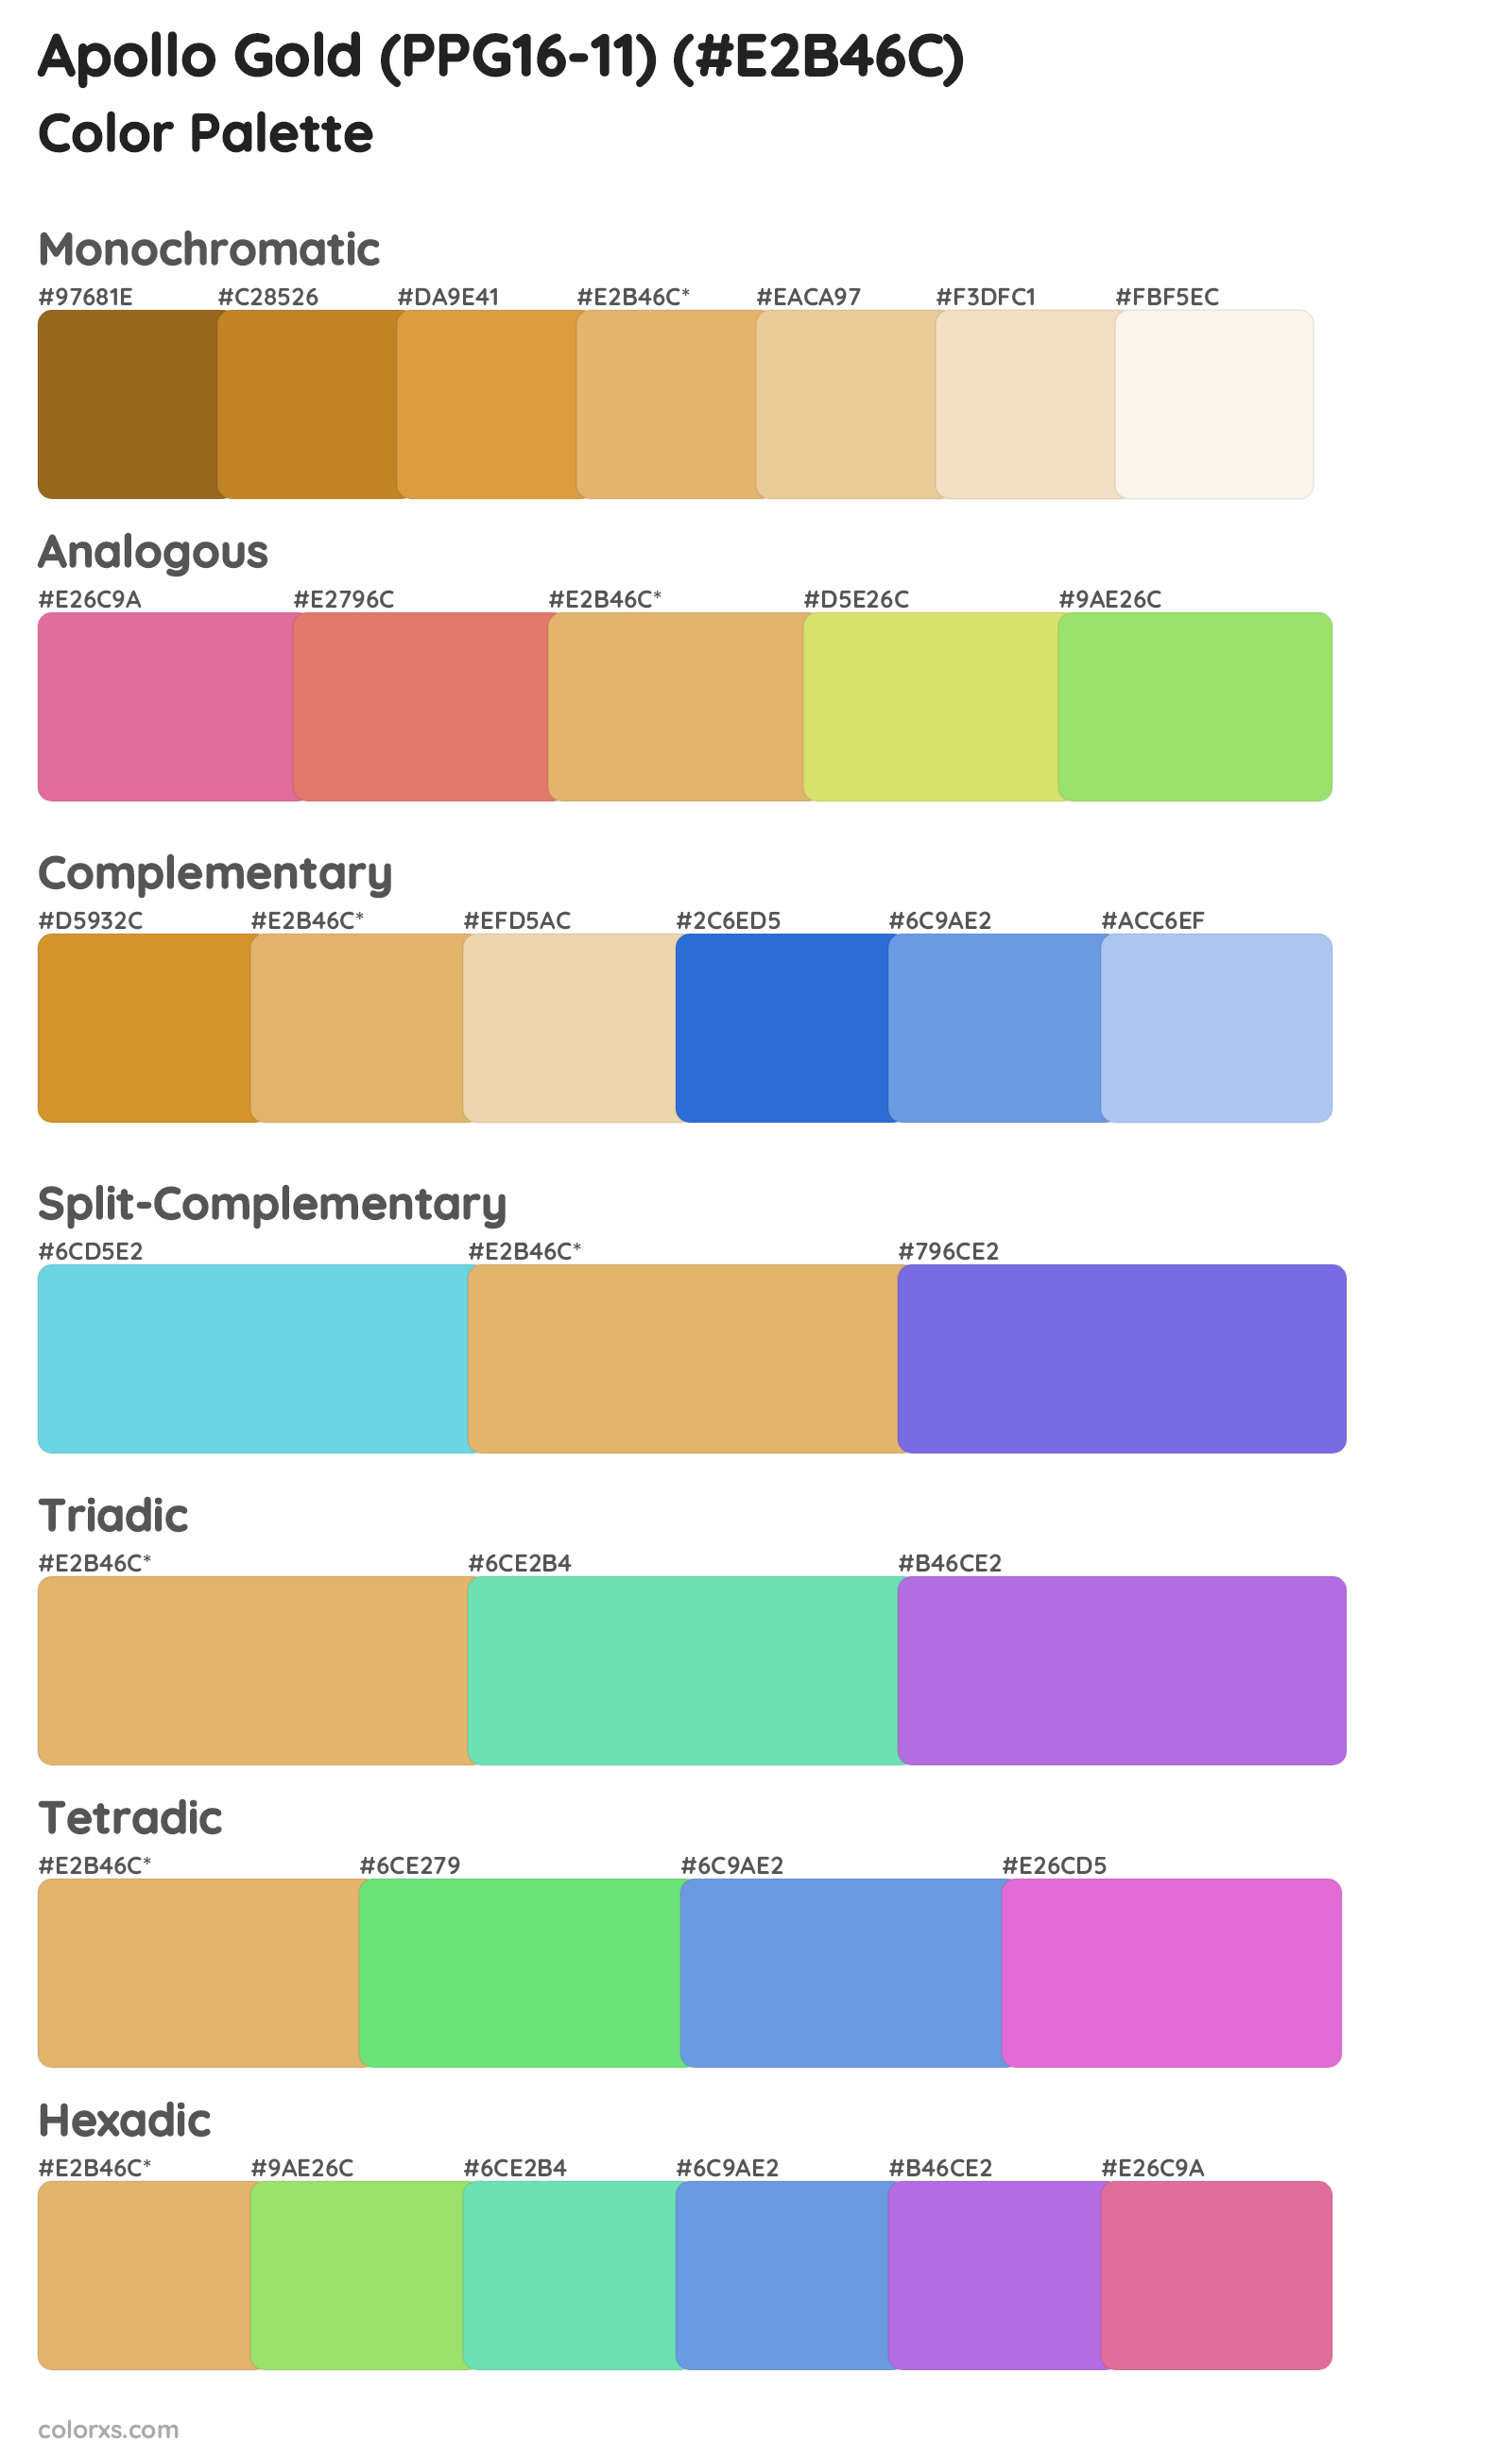 Apollo Gold (PPG16-11) Color Scheme Palettes